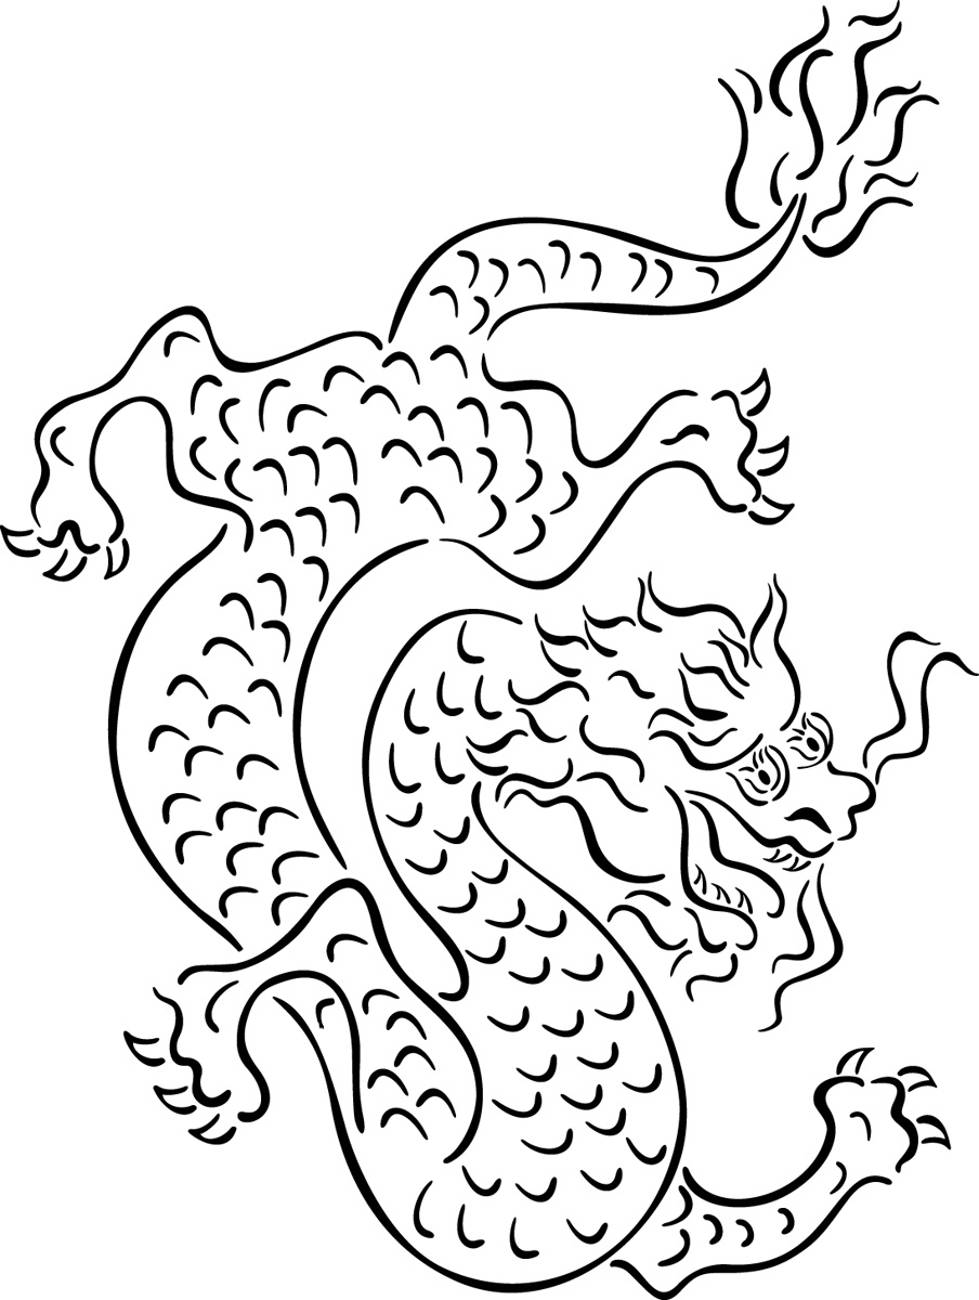 Китайский дракон трафарет для вырезания